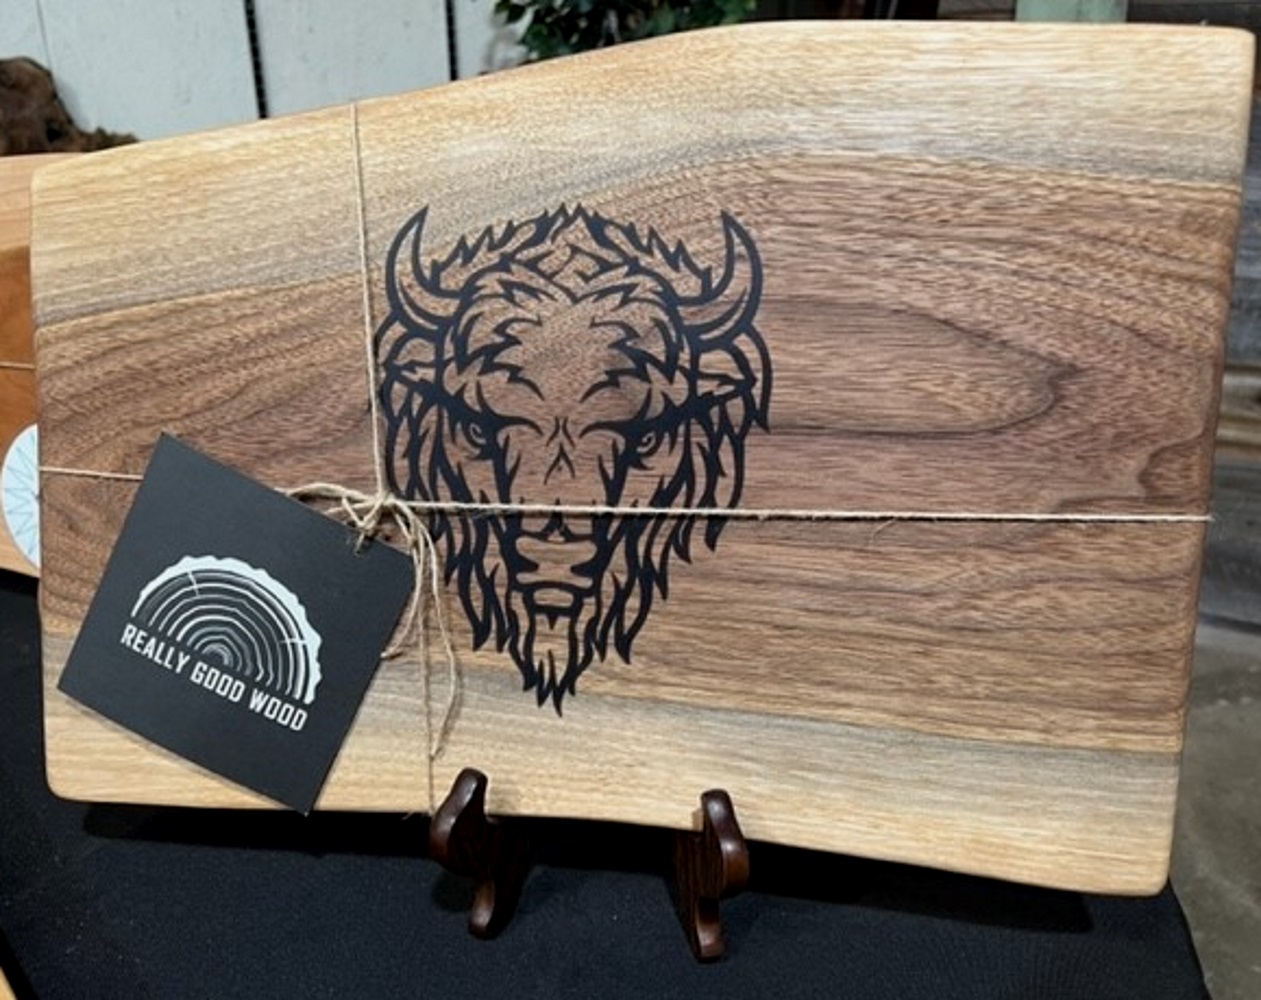 Custom Walnut Engraved Cutting Board - Forest Decor